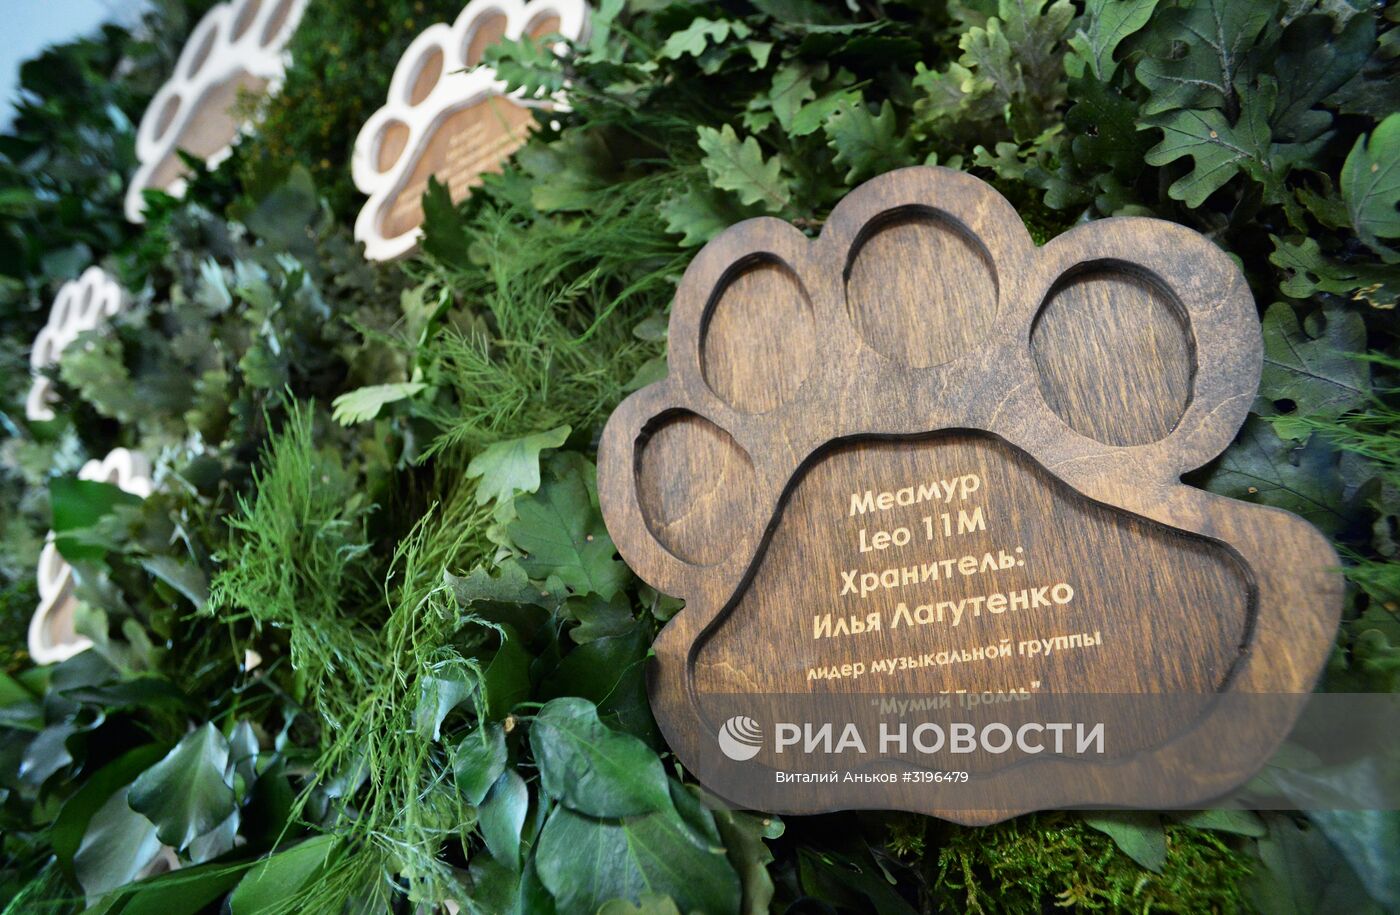 Открытие центральной усадьбы "Земля леопарда" в Приморском крае